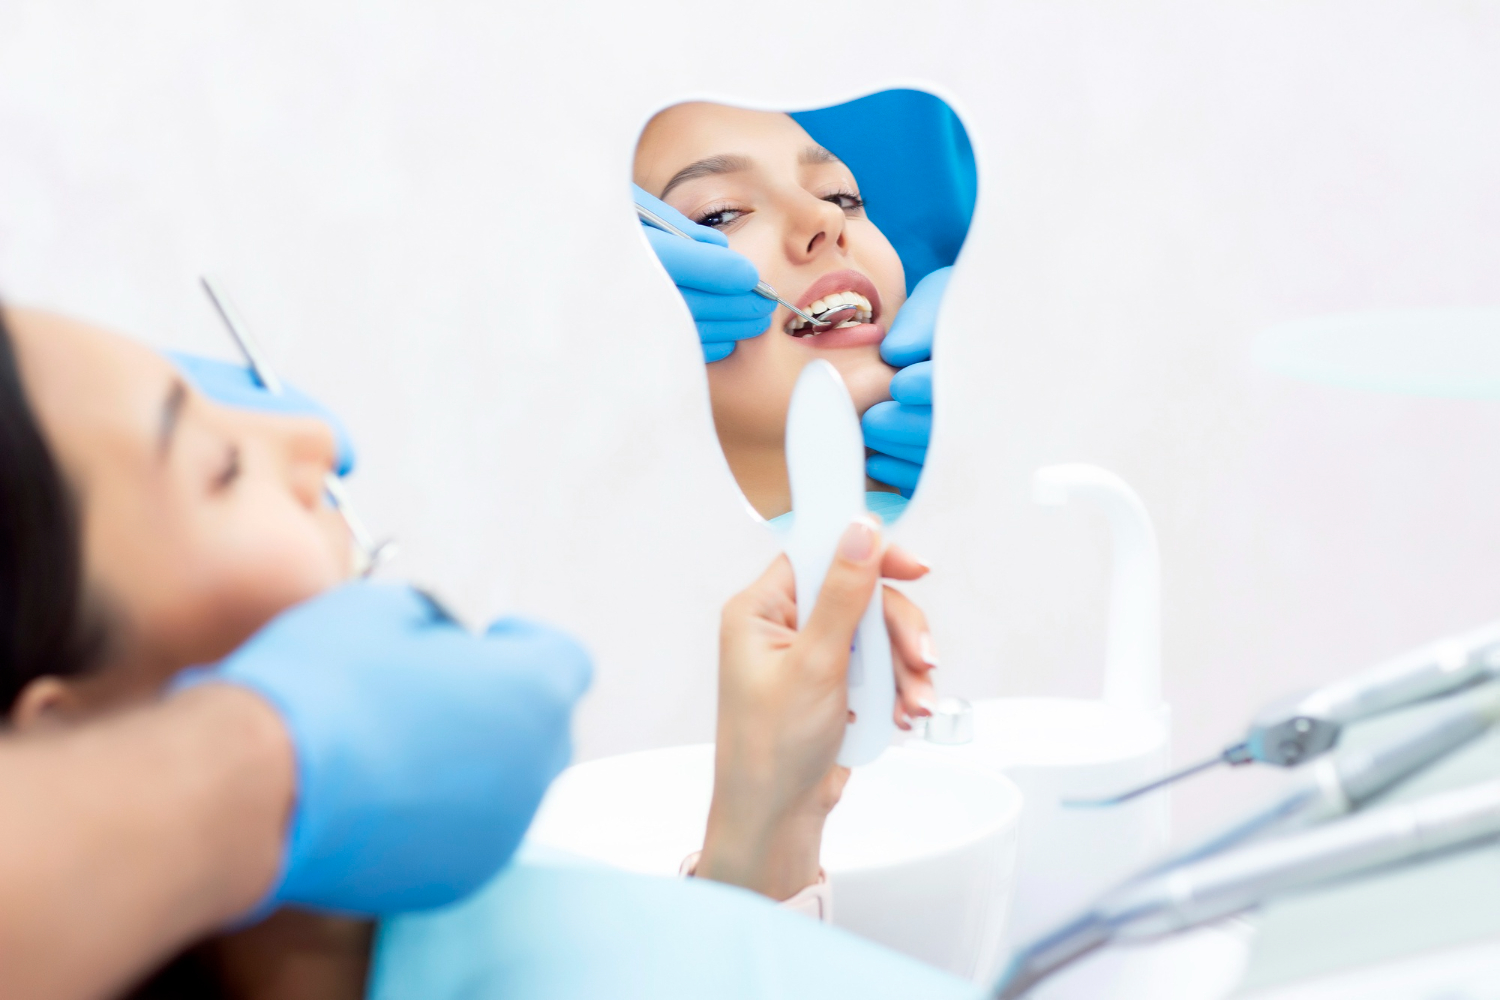 Amedent - Clínica Dental en Valencia|Una sonrisa saludable comienza con una buena higiene dental